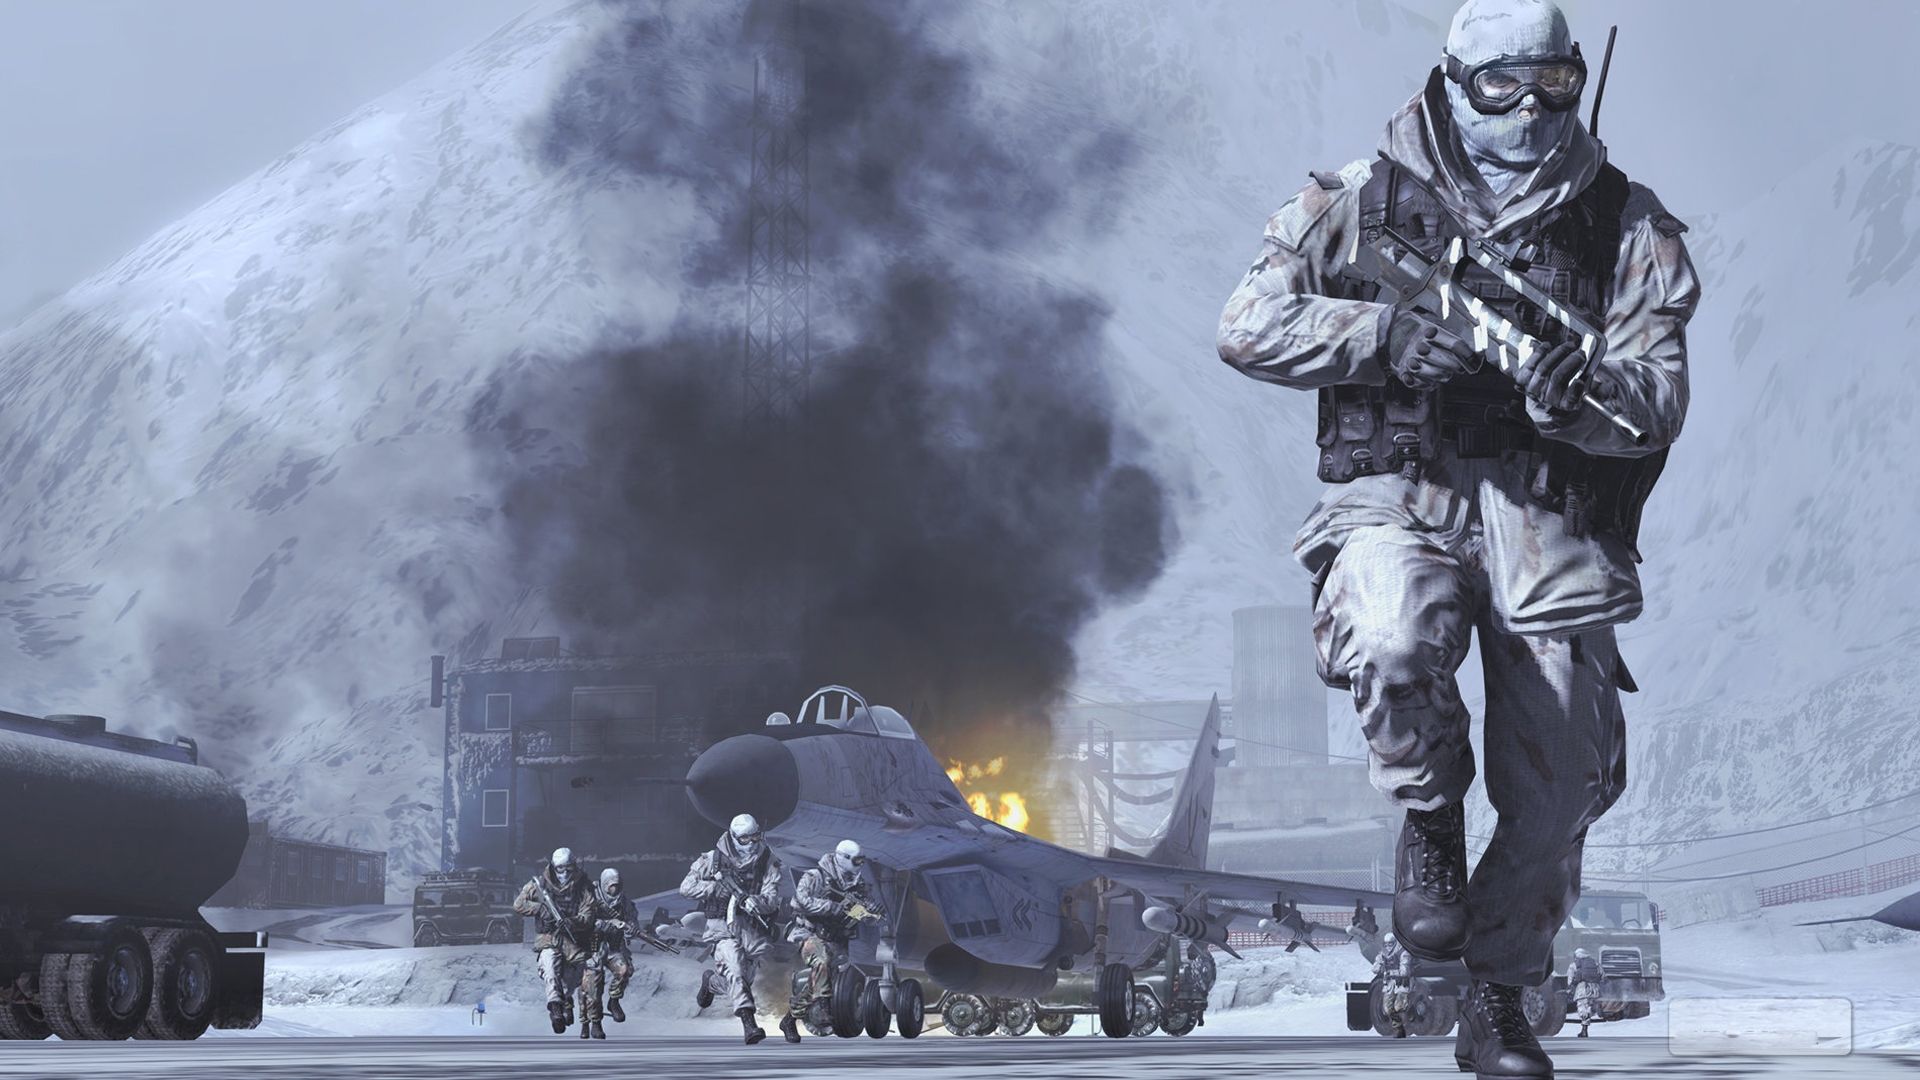 Call Of Duty Modern Warfare 2 .wallpaperden.com